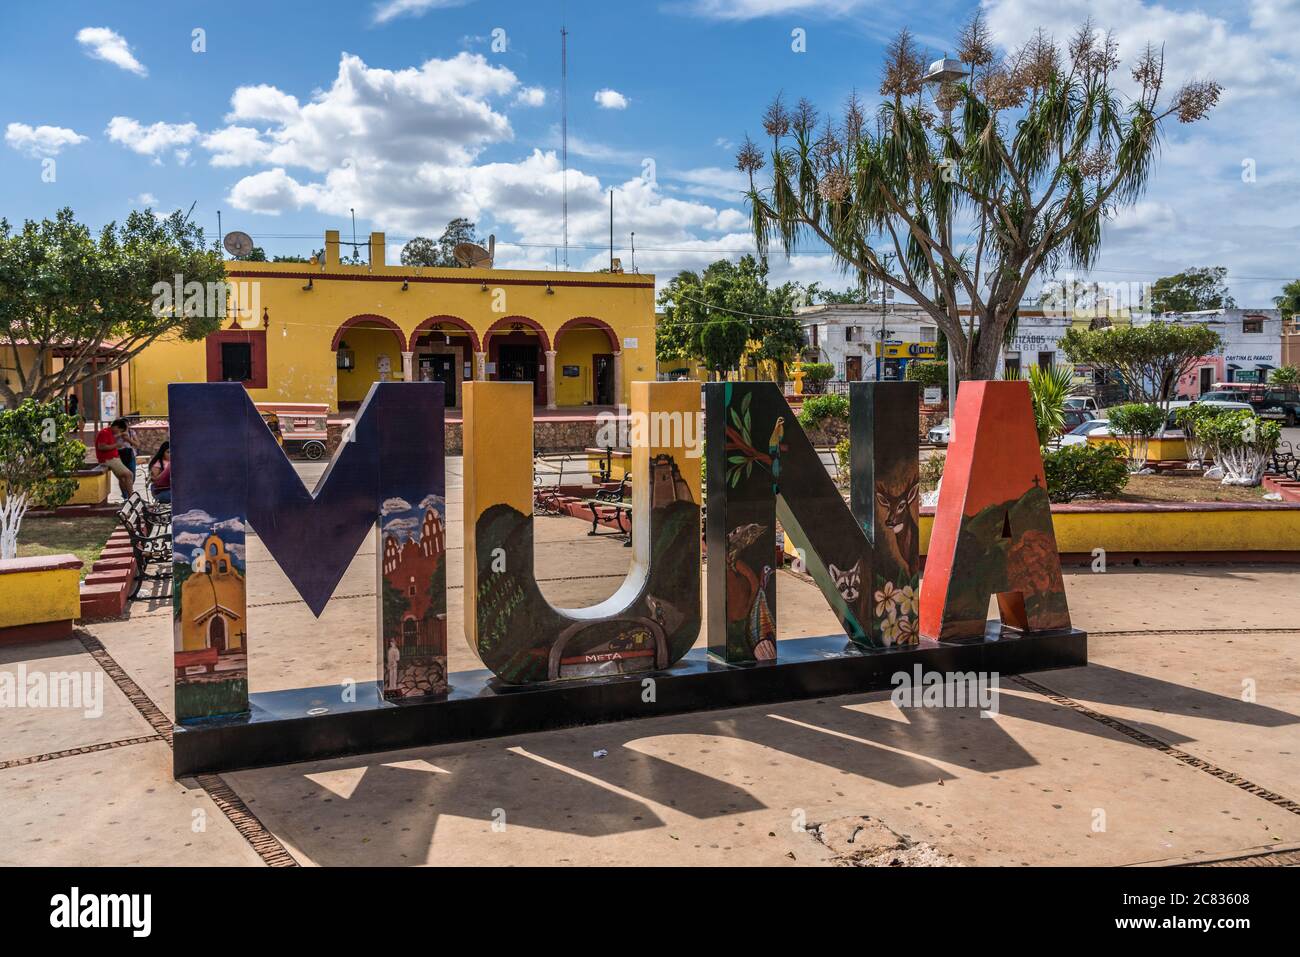 Le signe coloré de la ville sur la plaza pour Muna, Yucatan, Mexique. En arrière-plan se trouve le palais municipal jaune ou l'hôtel de ville. Banque D'Images